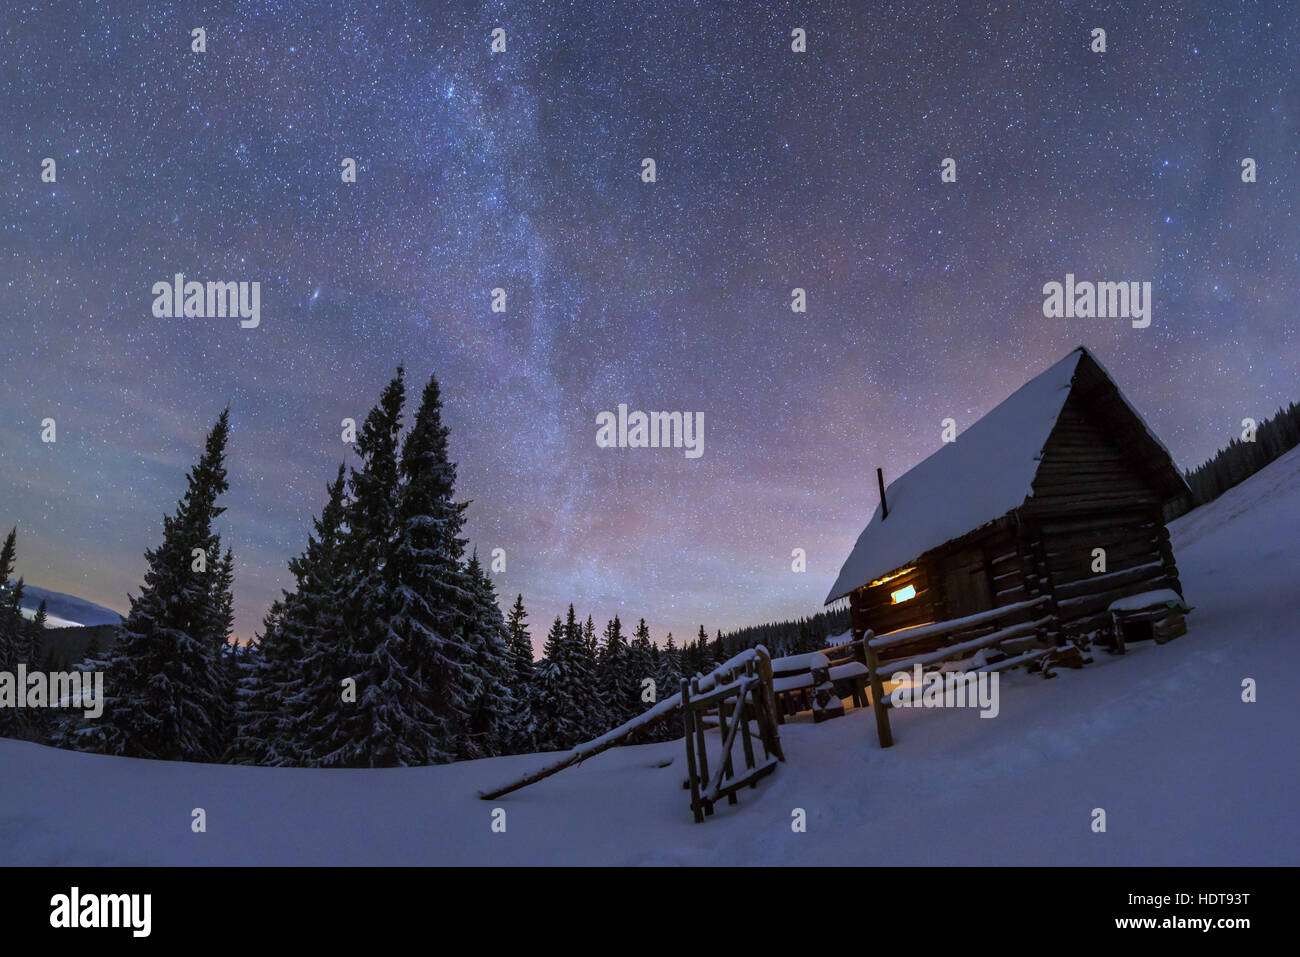 Fantastico paesaggio notturno incandescente dalla via lattea. Drammatica scena invernale con casa nevoso. Carpazi, Ucraina, l'Europa. Foto Stock